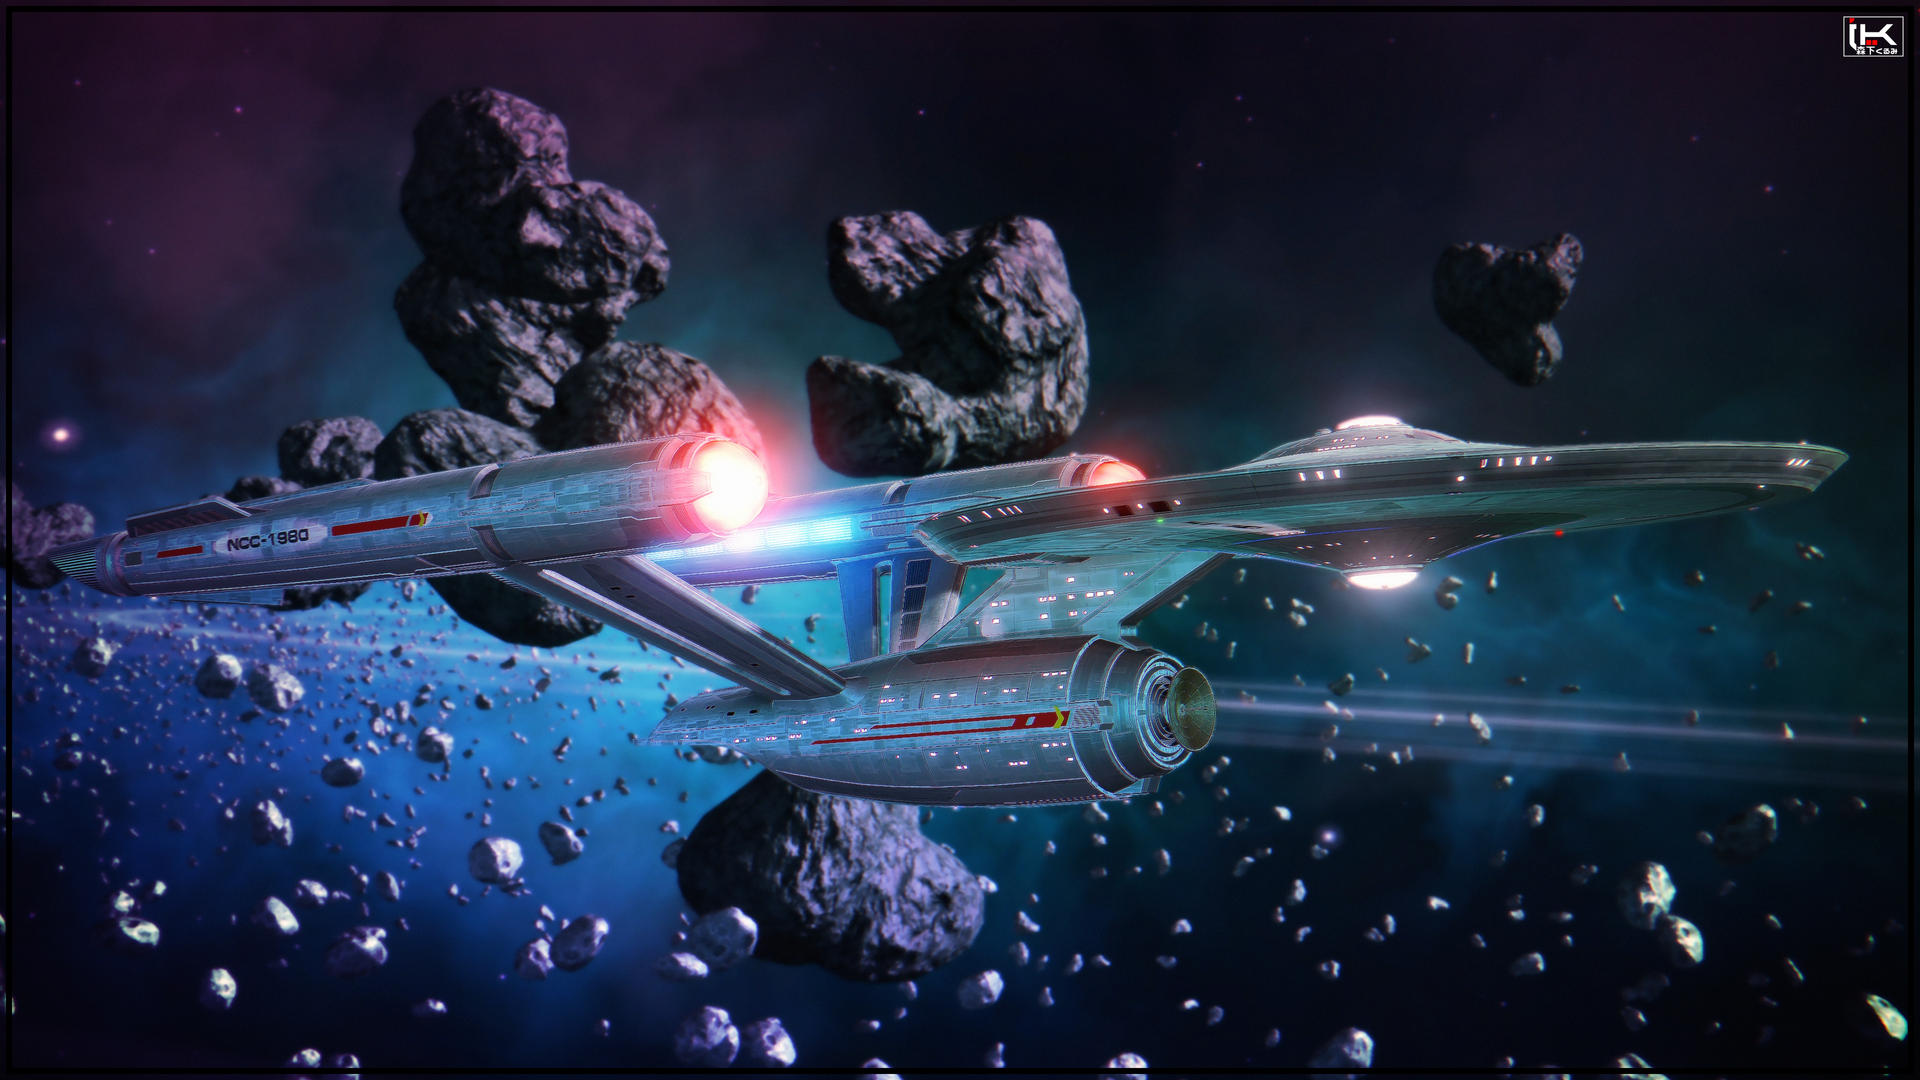 General 1920x1080 Star Trek USS Enterprise (spaceship) science fiction artwork spaceship vehicle TV series